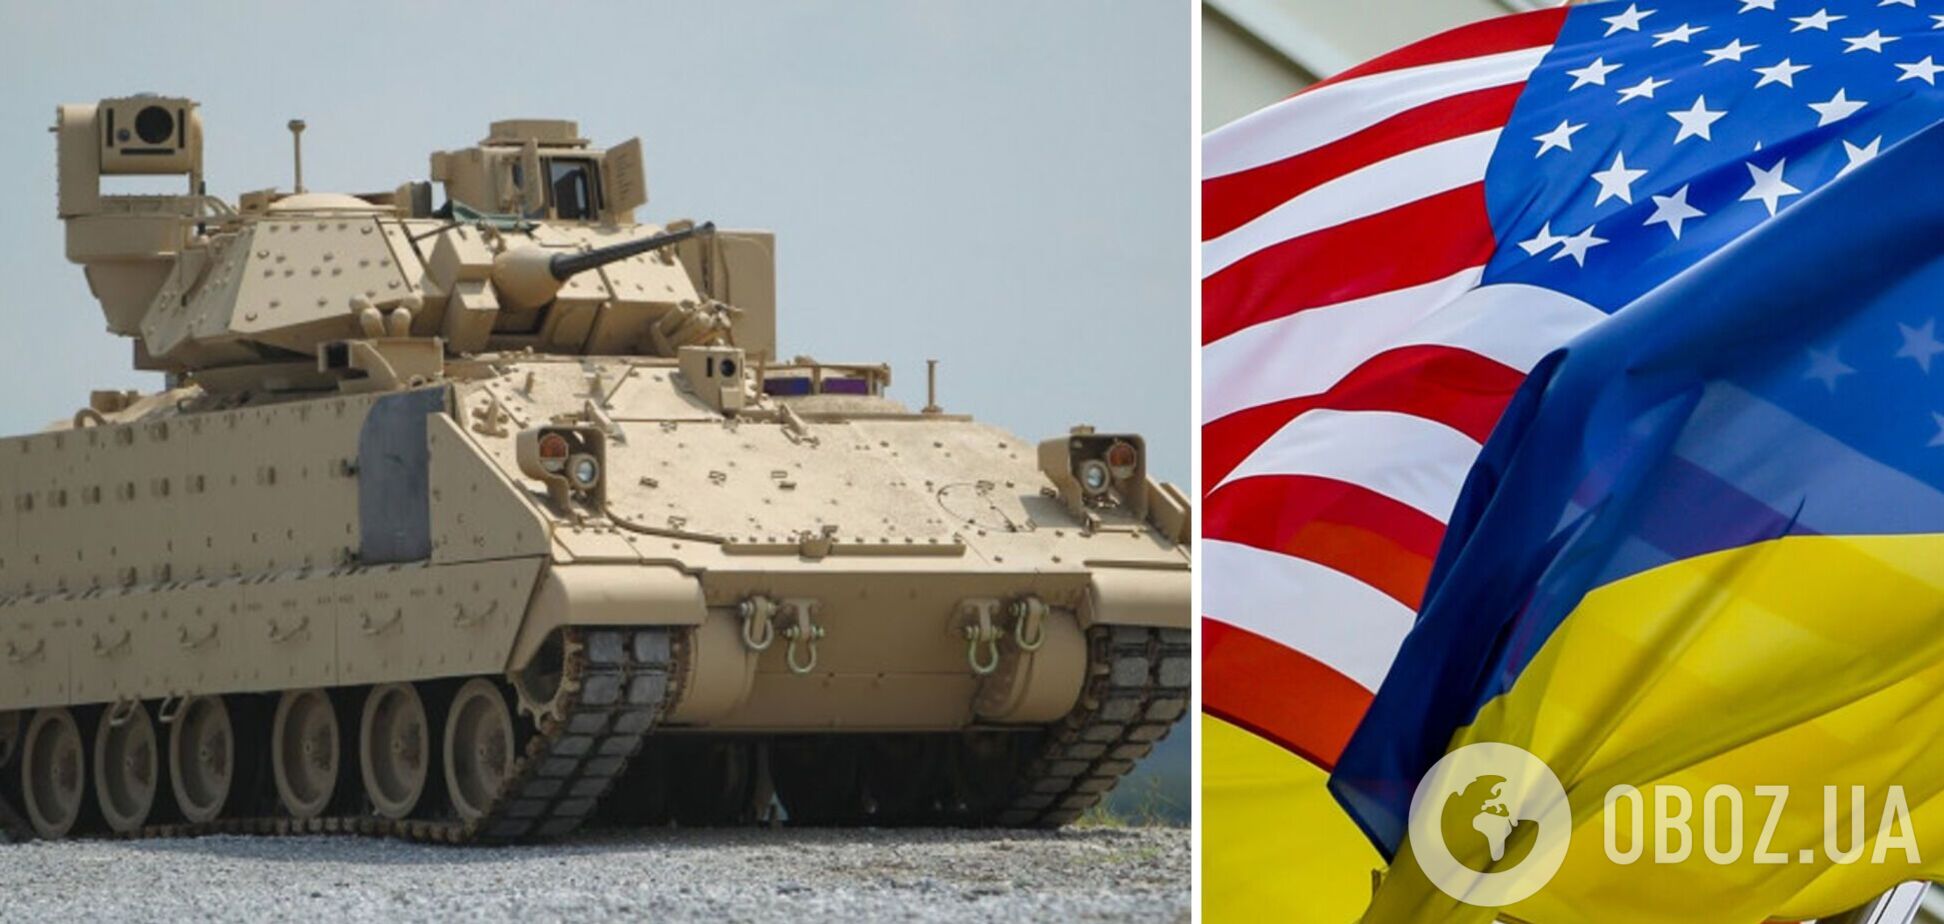 США анонсировали рекордный пакет военной помощи Украине на $3 миллиарда: в него войдут 50 БМП Bradley